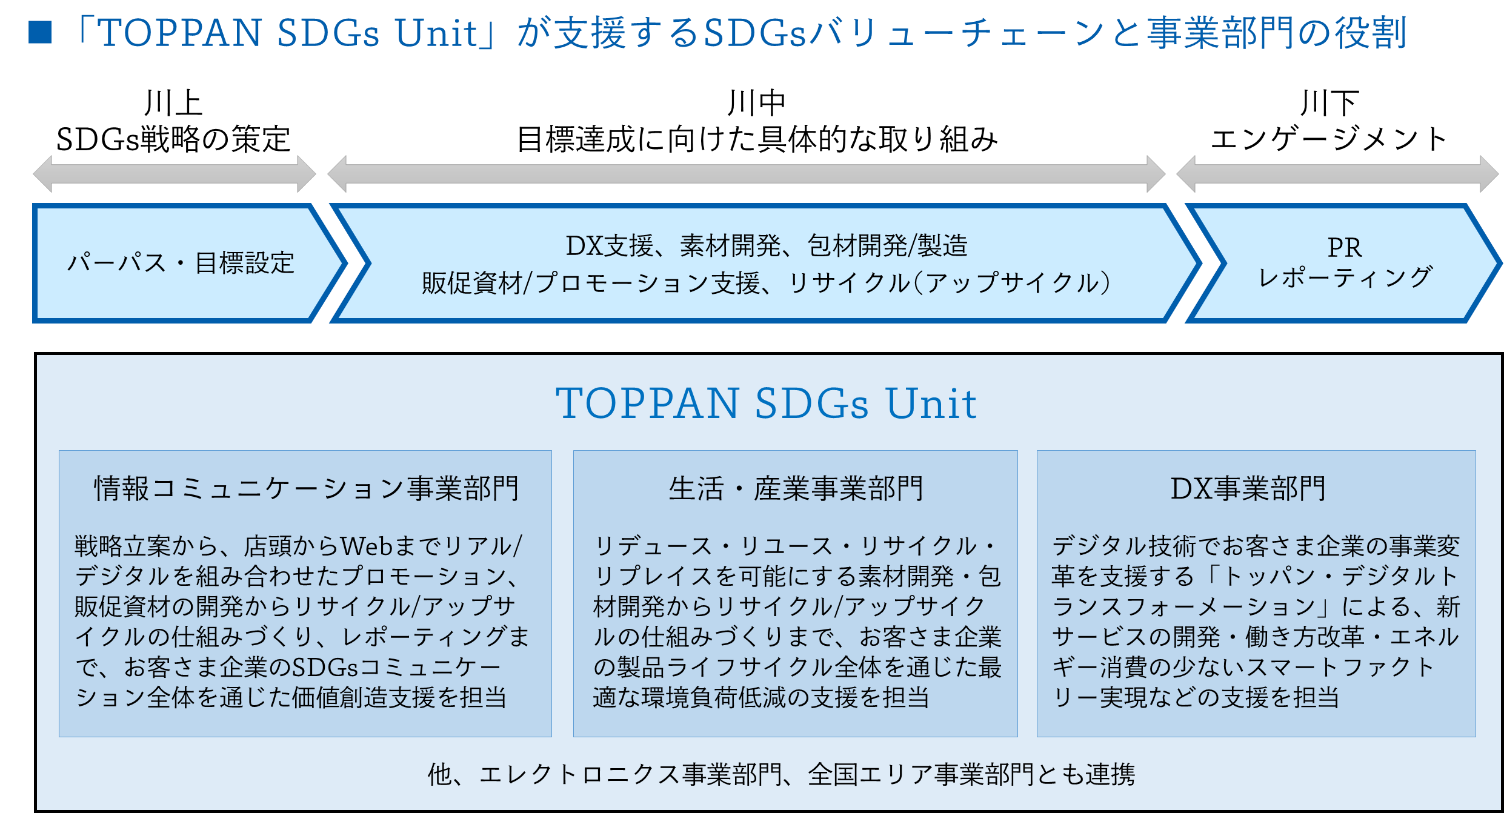 TOPPAN SDGs Unit